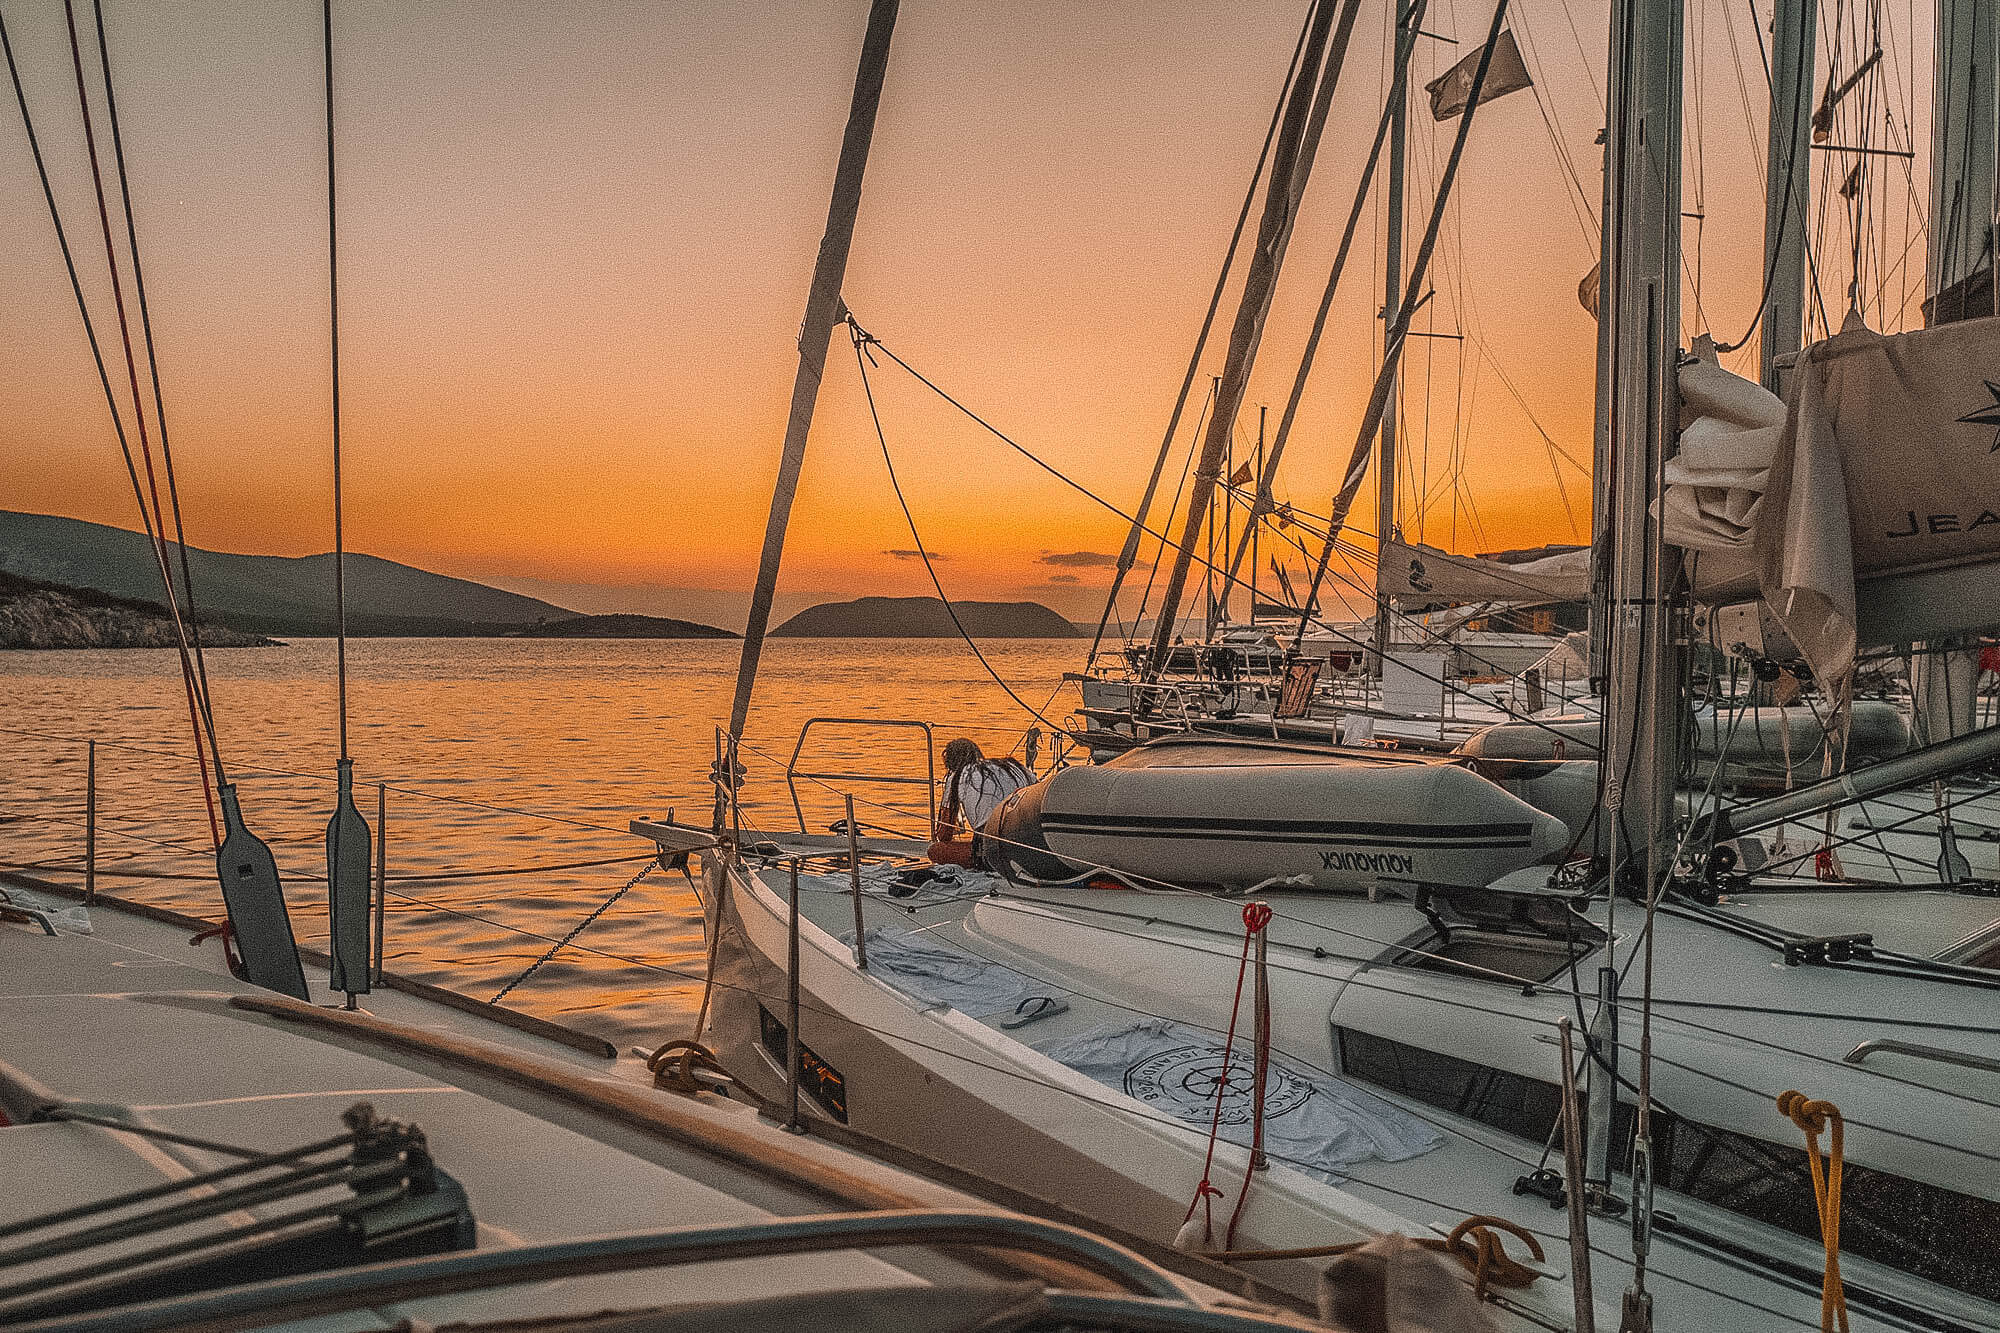 Greece yacht week